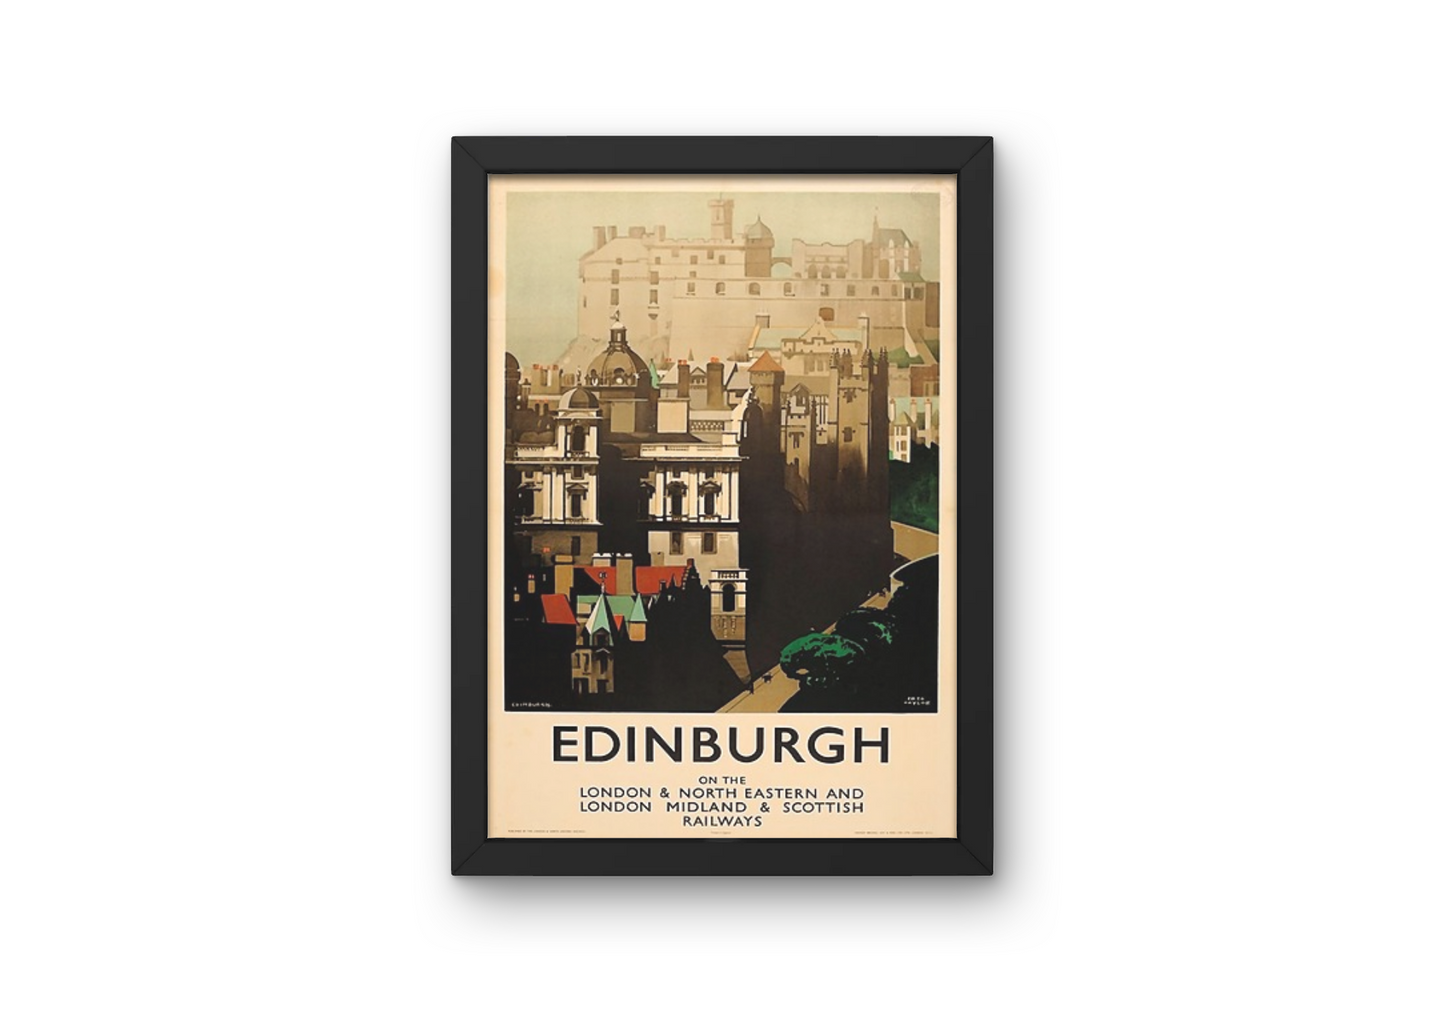 Vintage Edinburgh Castle Travel Art Painting